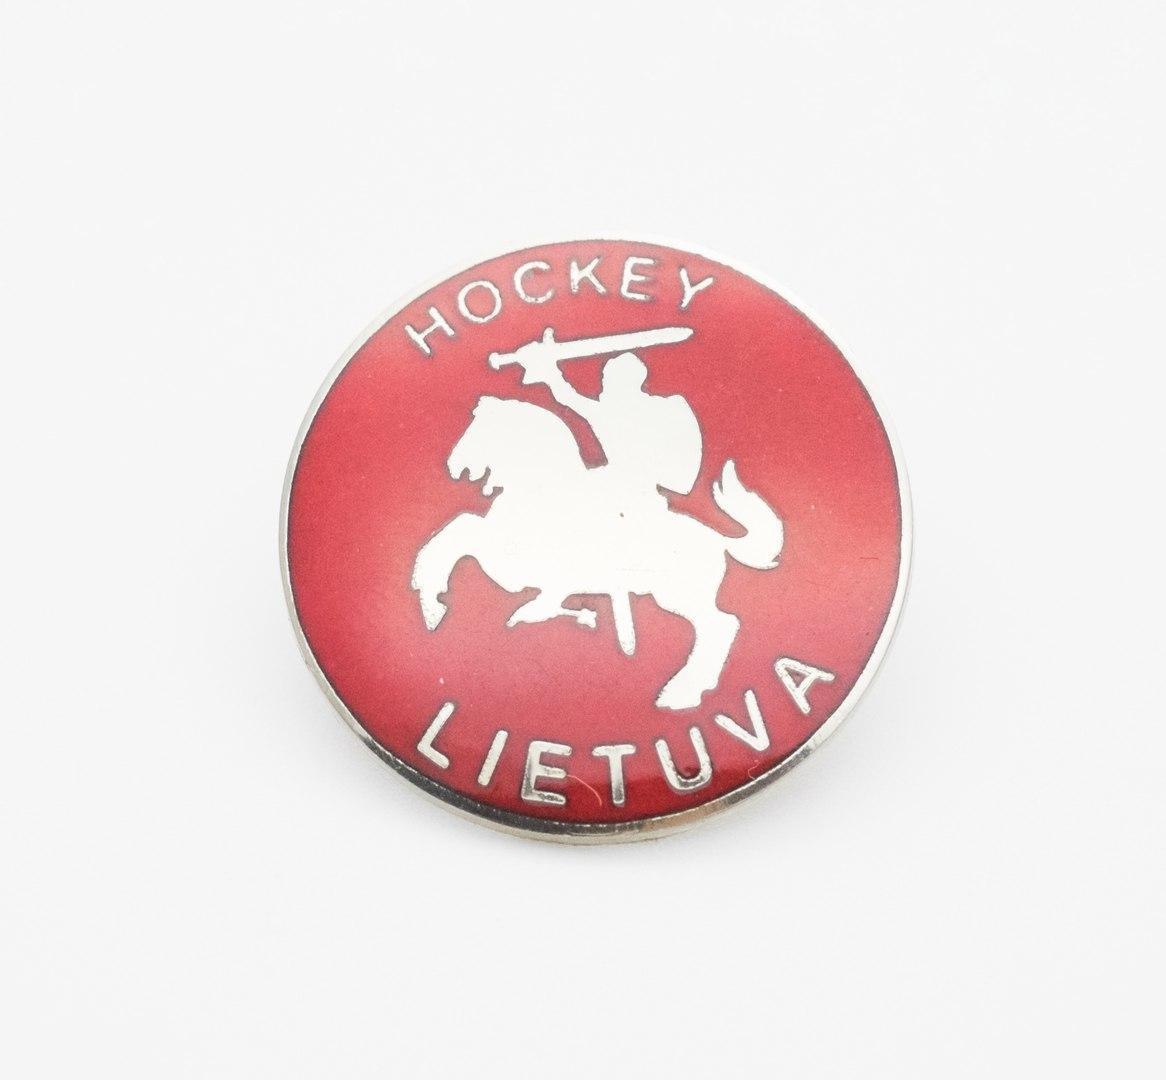 Официальный значок федерация хоккея Литвы (выпуска 2016 года)